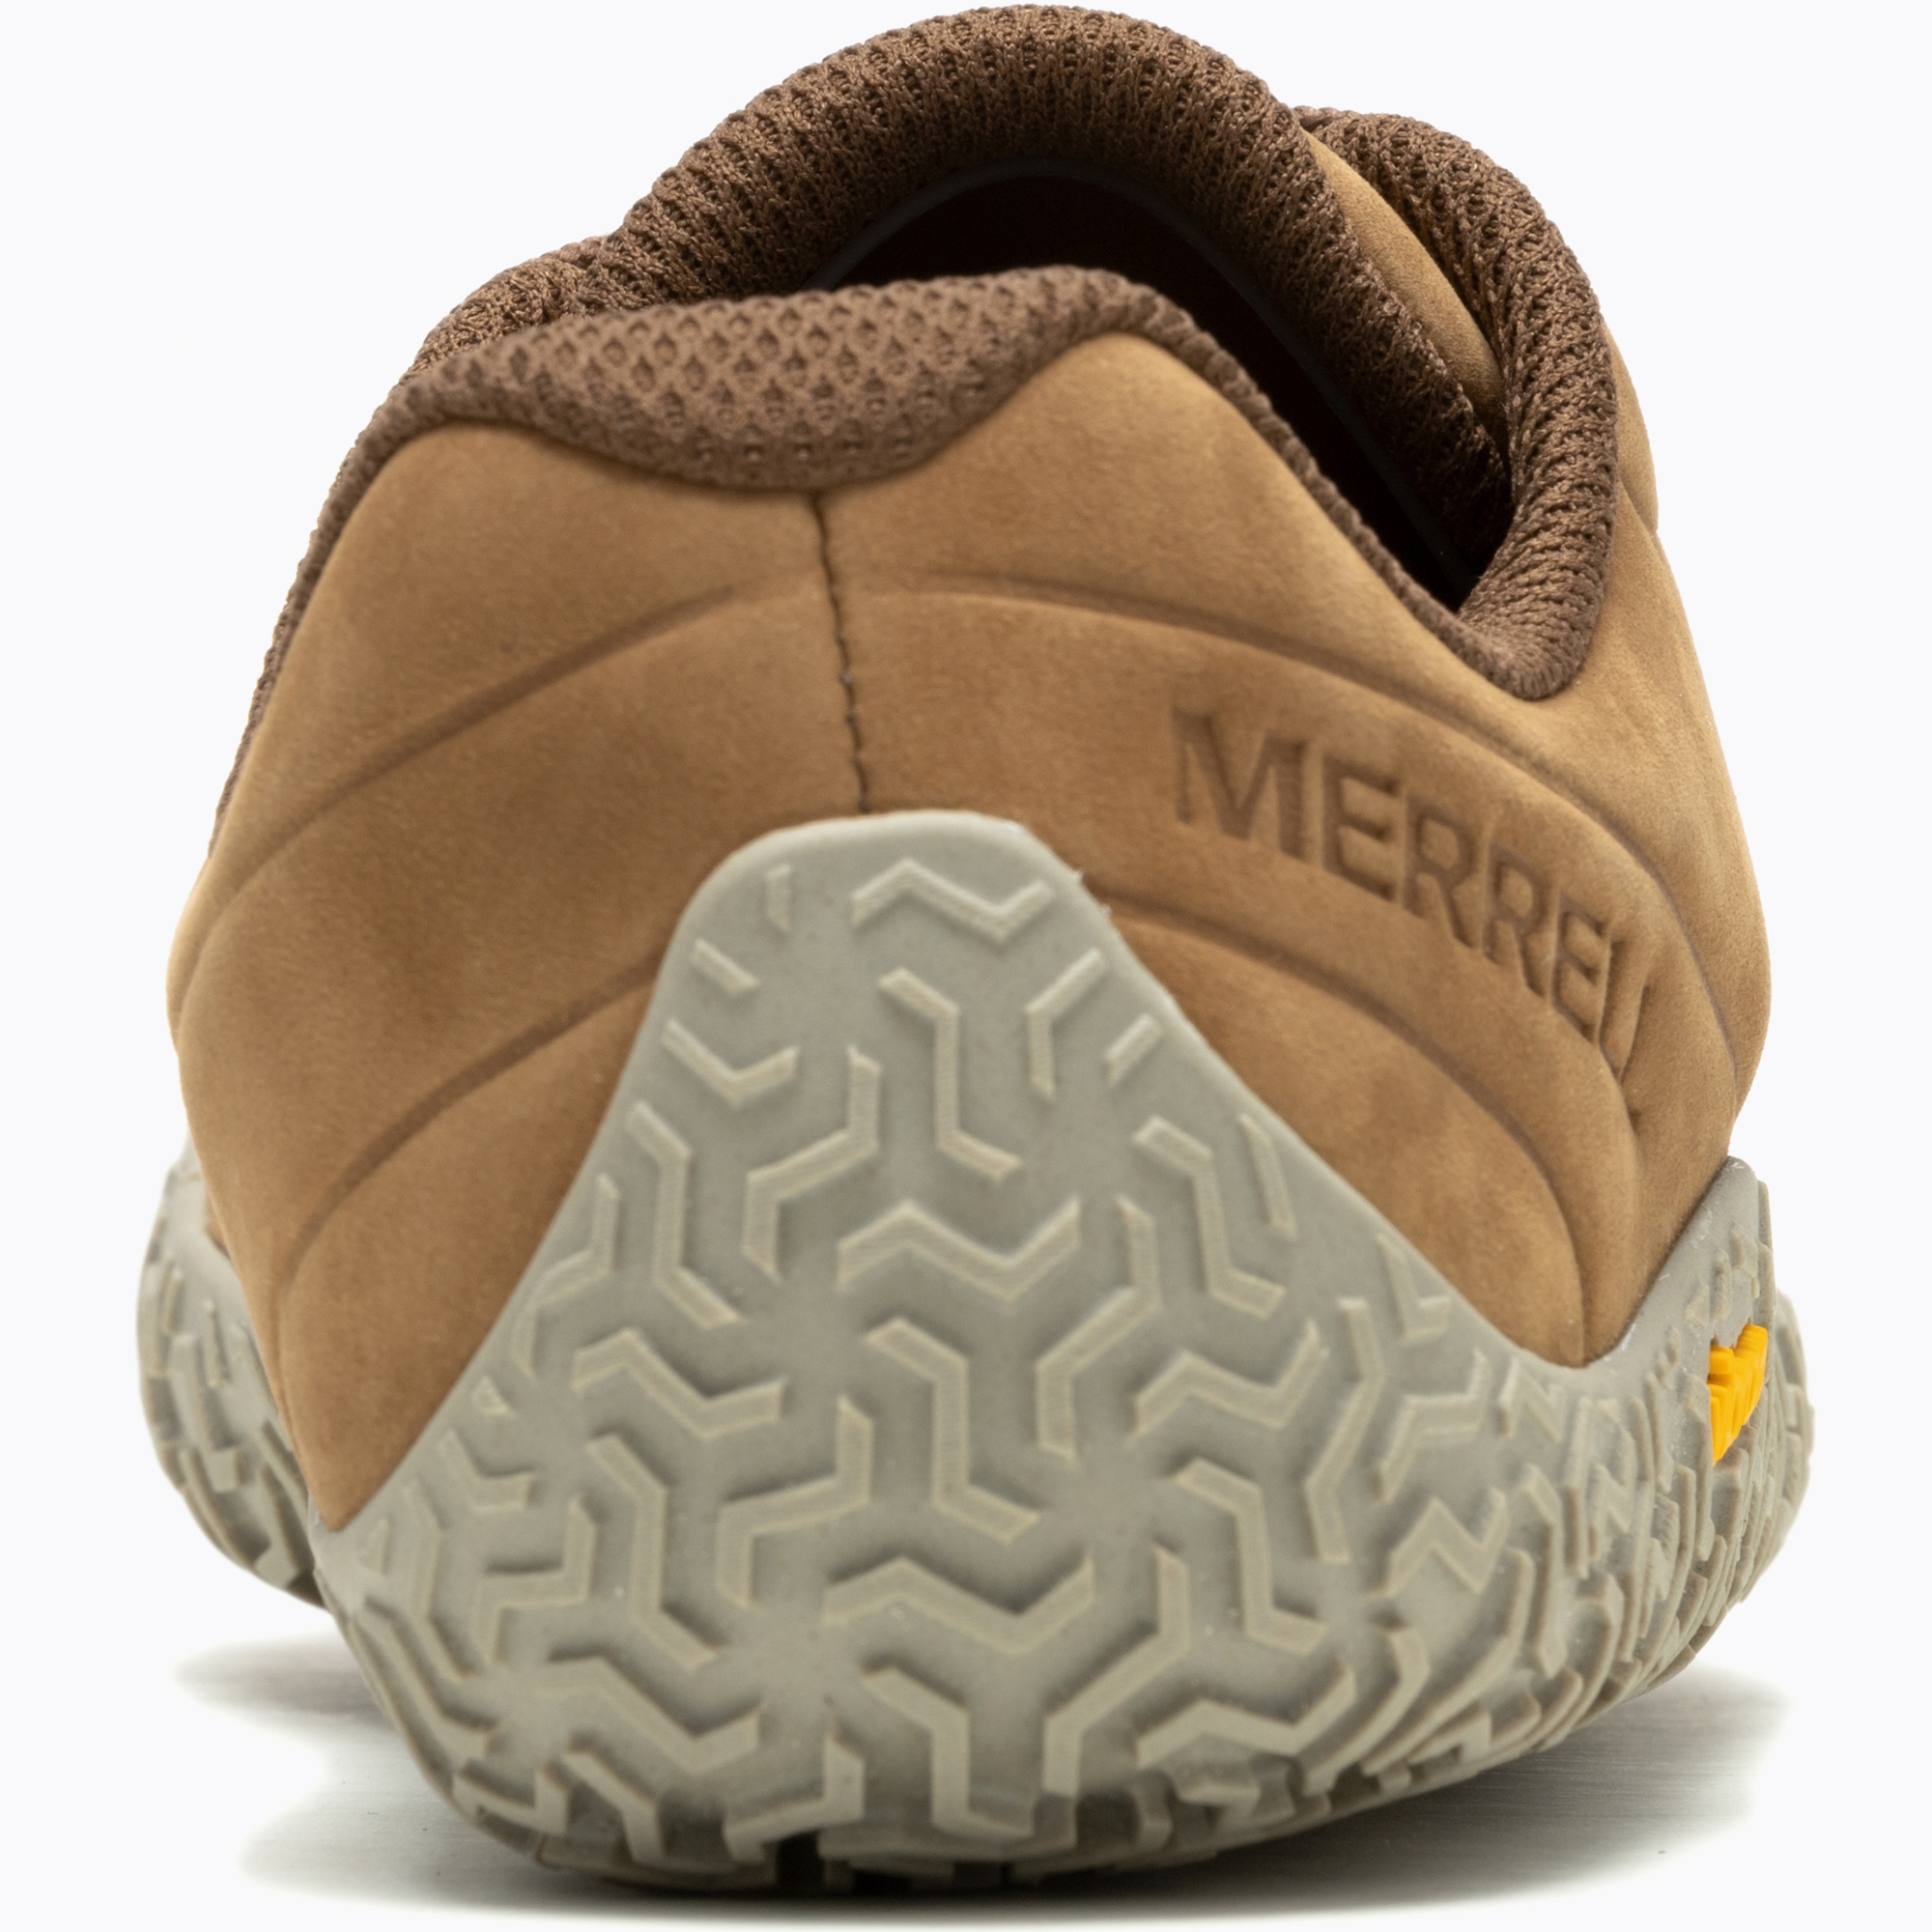 Zapatos Merrell Vapor Glove 6 Ltr J067890 Tobacco